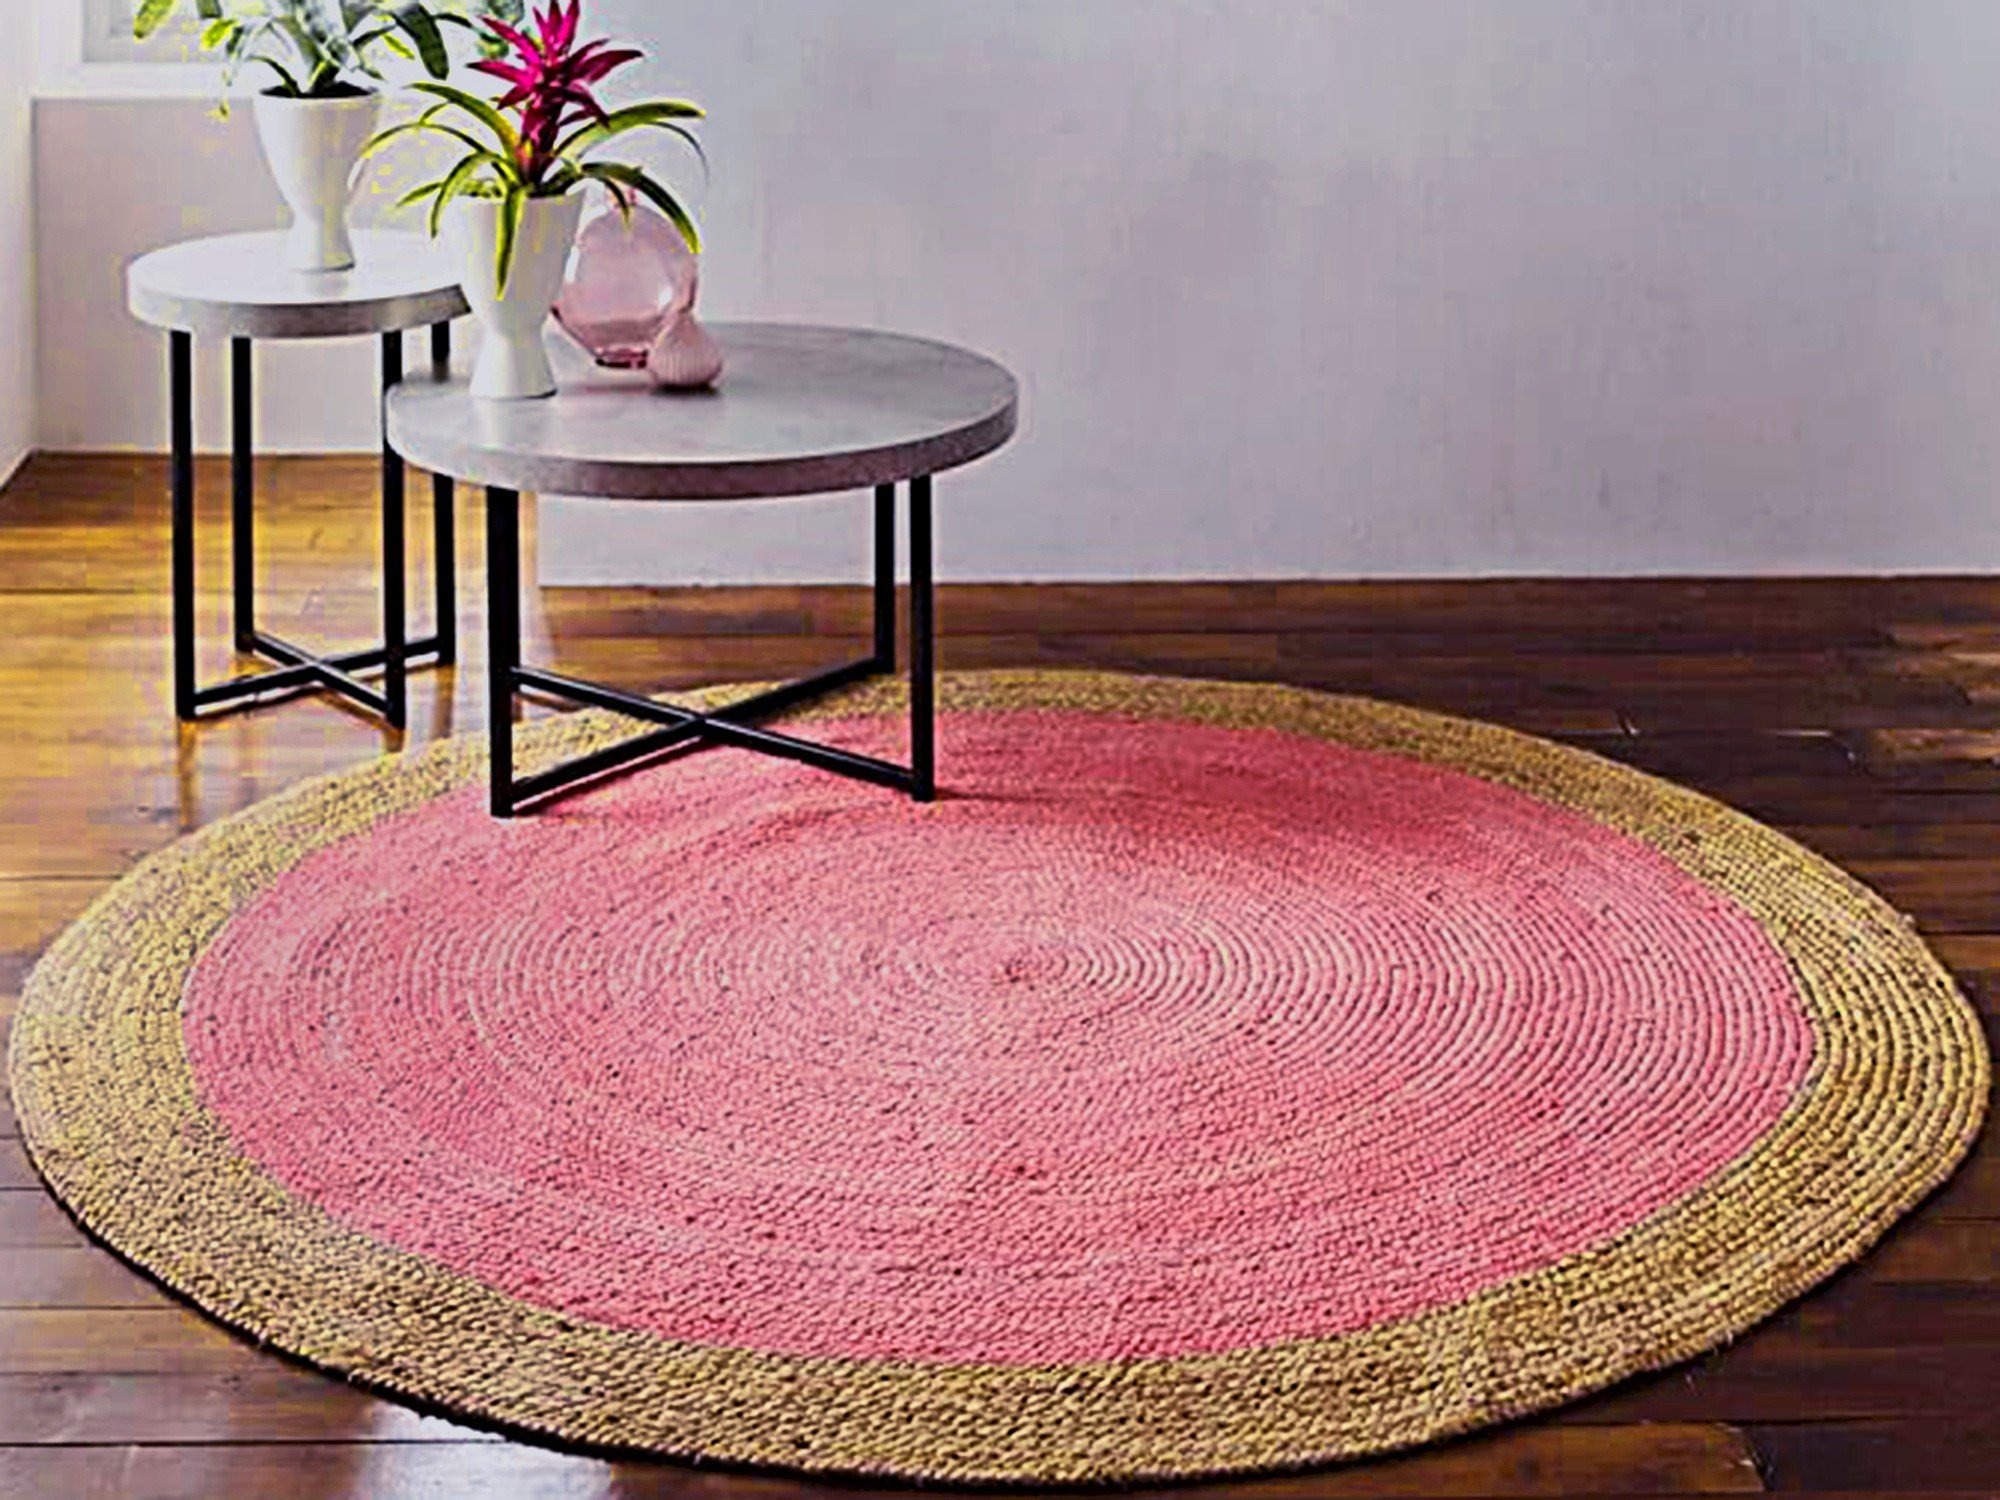 Aesthetic Modern Living Handwoven Boho Jute Floor Rugs - Available in 8 ...